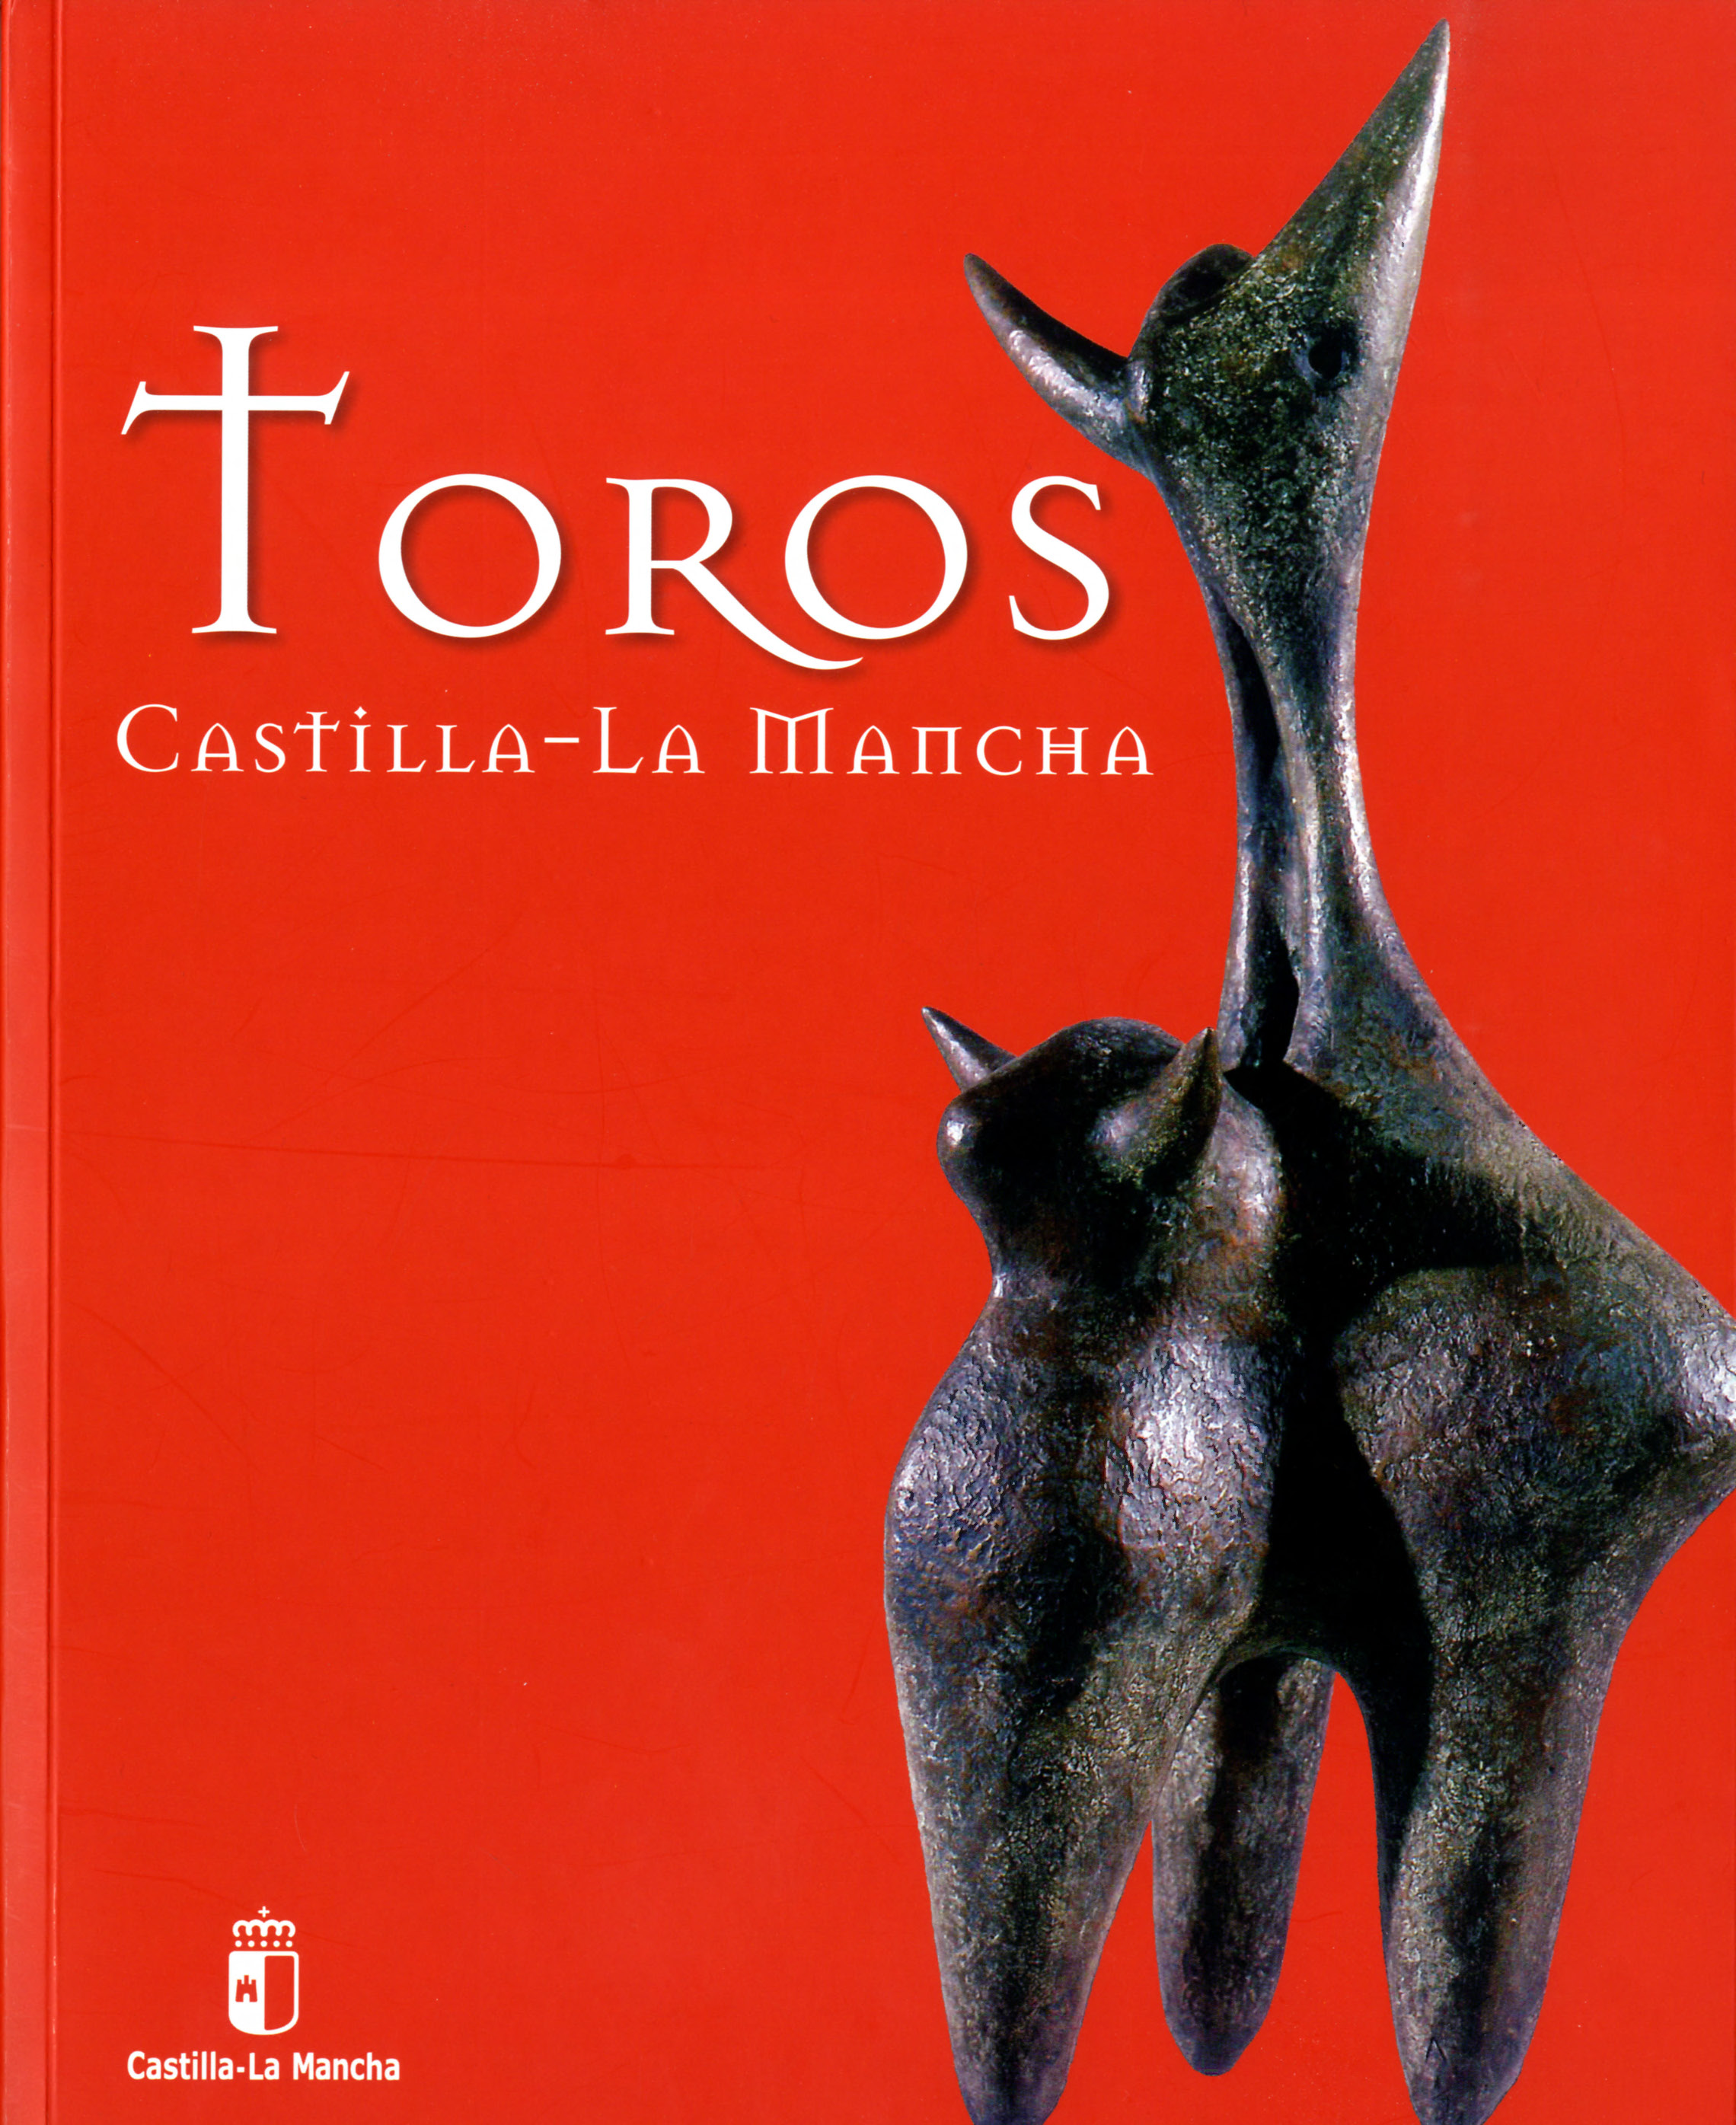 Imagen de portada del libro Toros Castilla-La Mancha